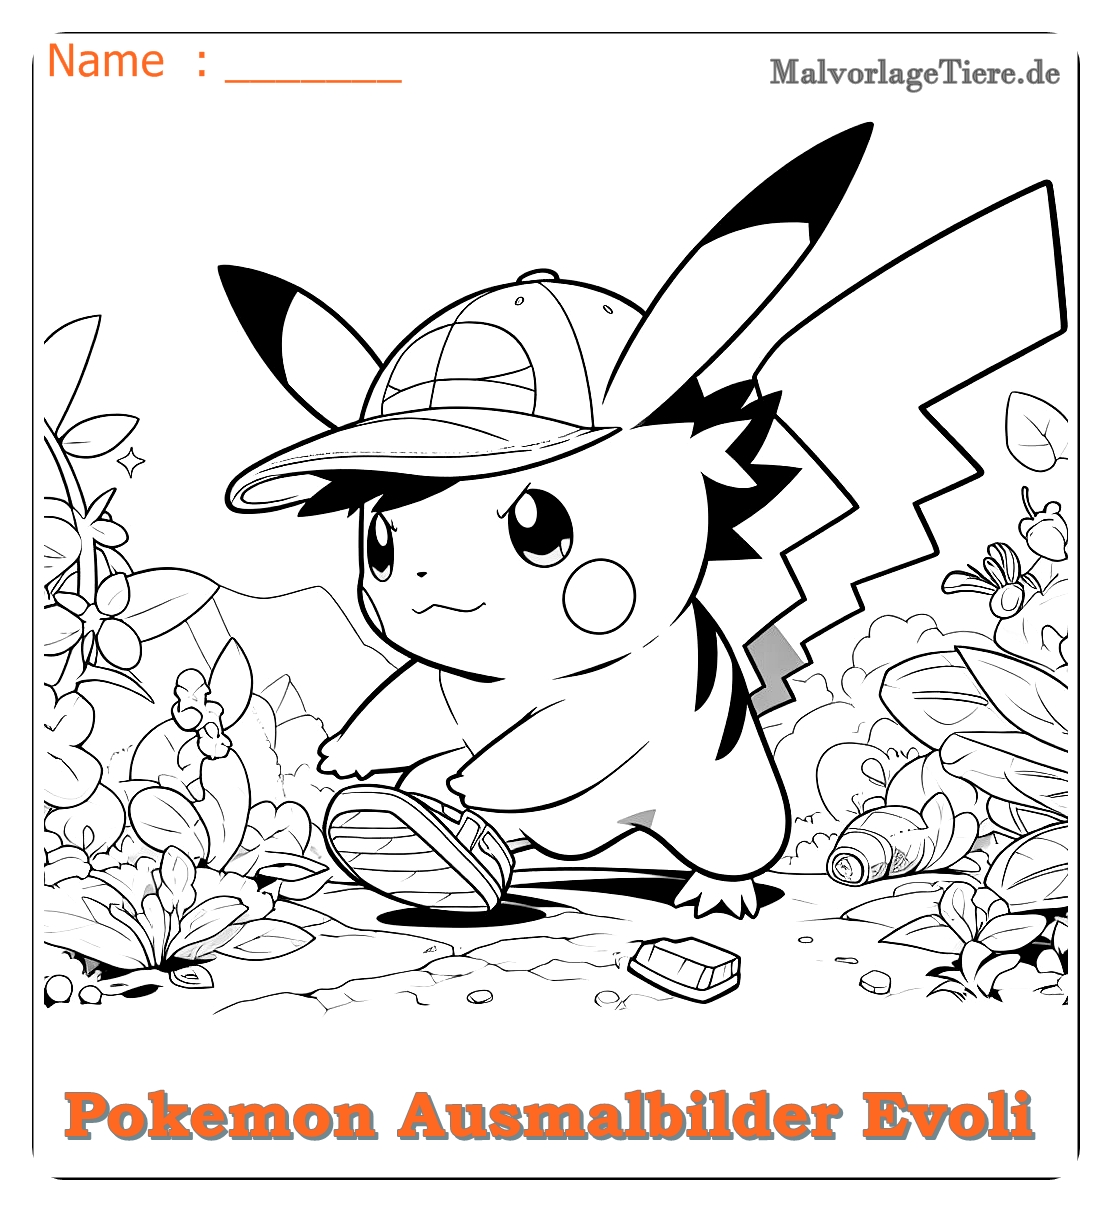 pokemon ausmalbilder evoli entwicklungen 07 by malvorlagetiere.de